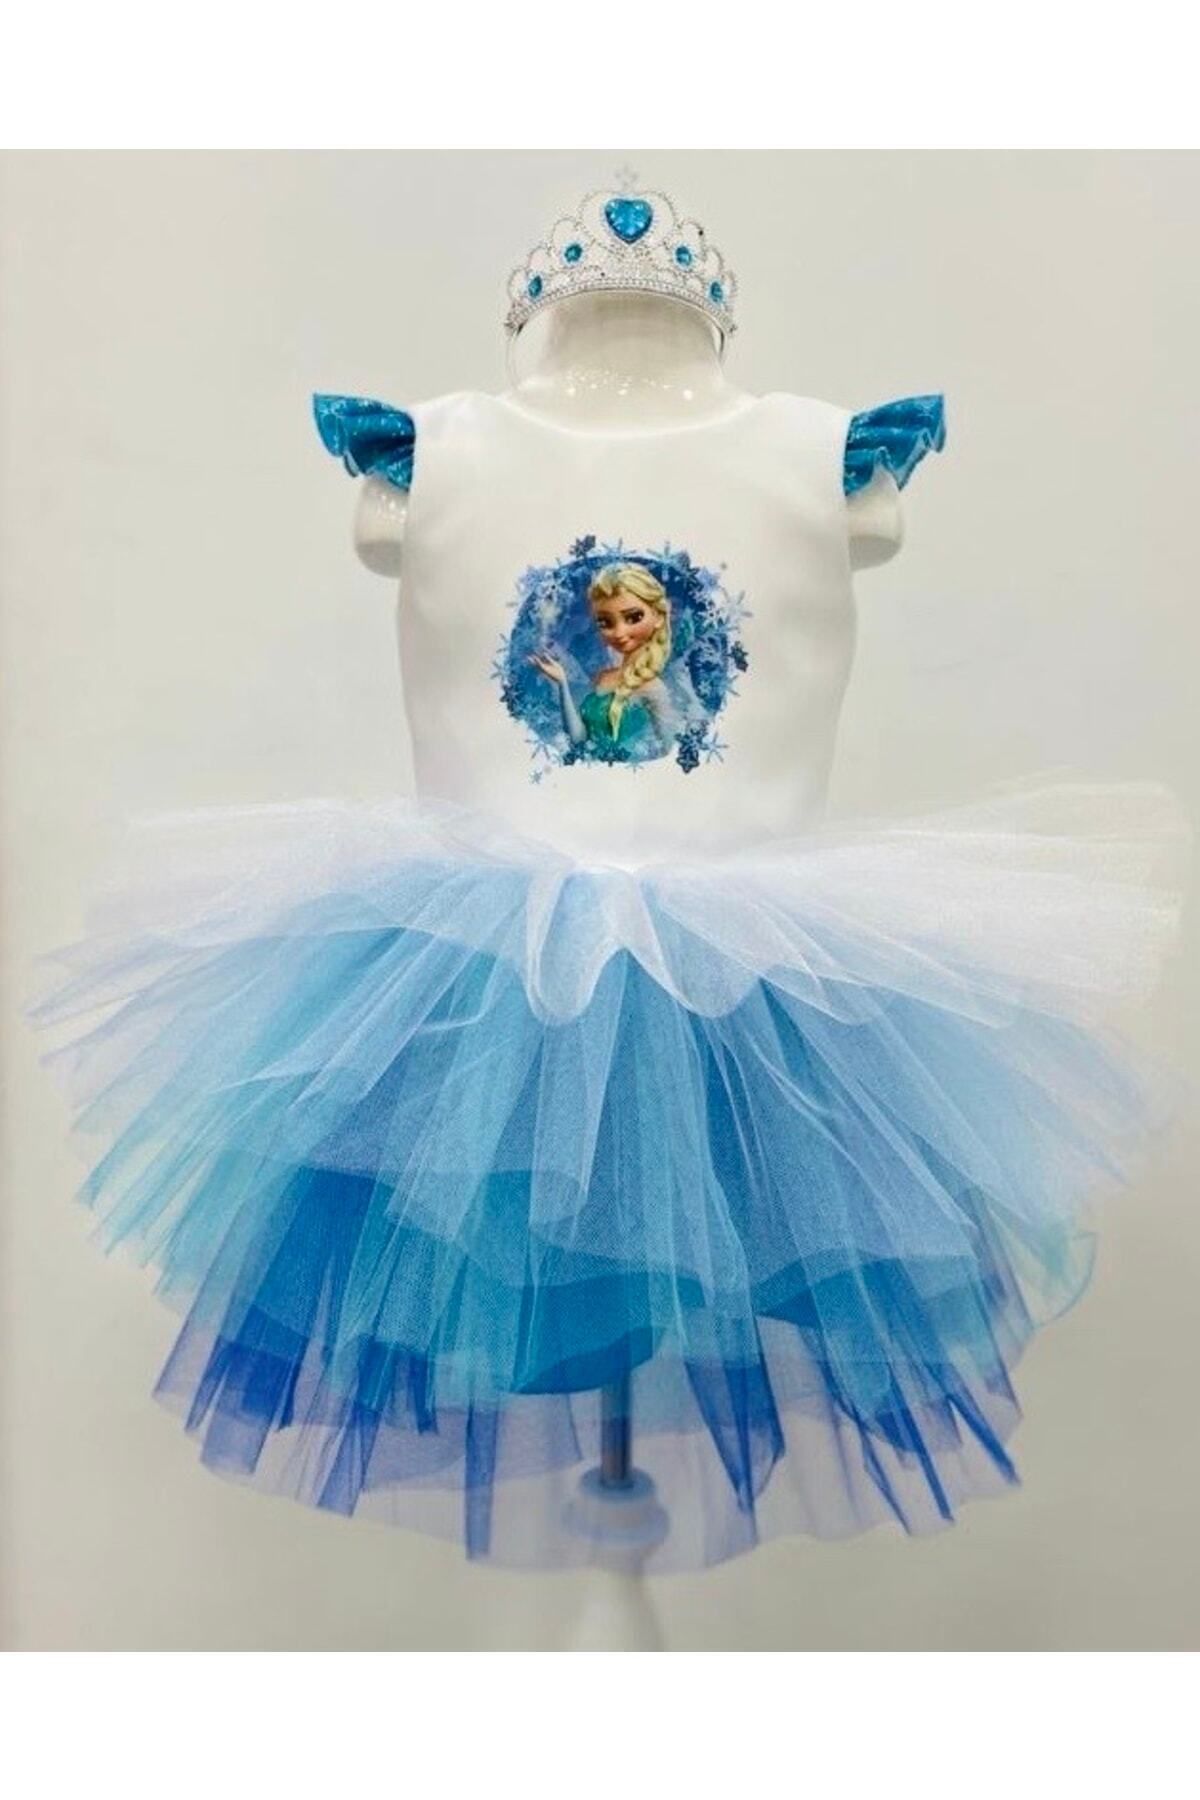 YAĞMUR KOStütüM Kız Çocuk Mavi Elsa Karlar Ülkesi Model Doğum Günü Parti Elbisesi Kostümü